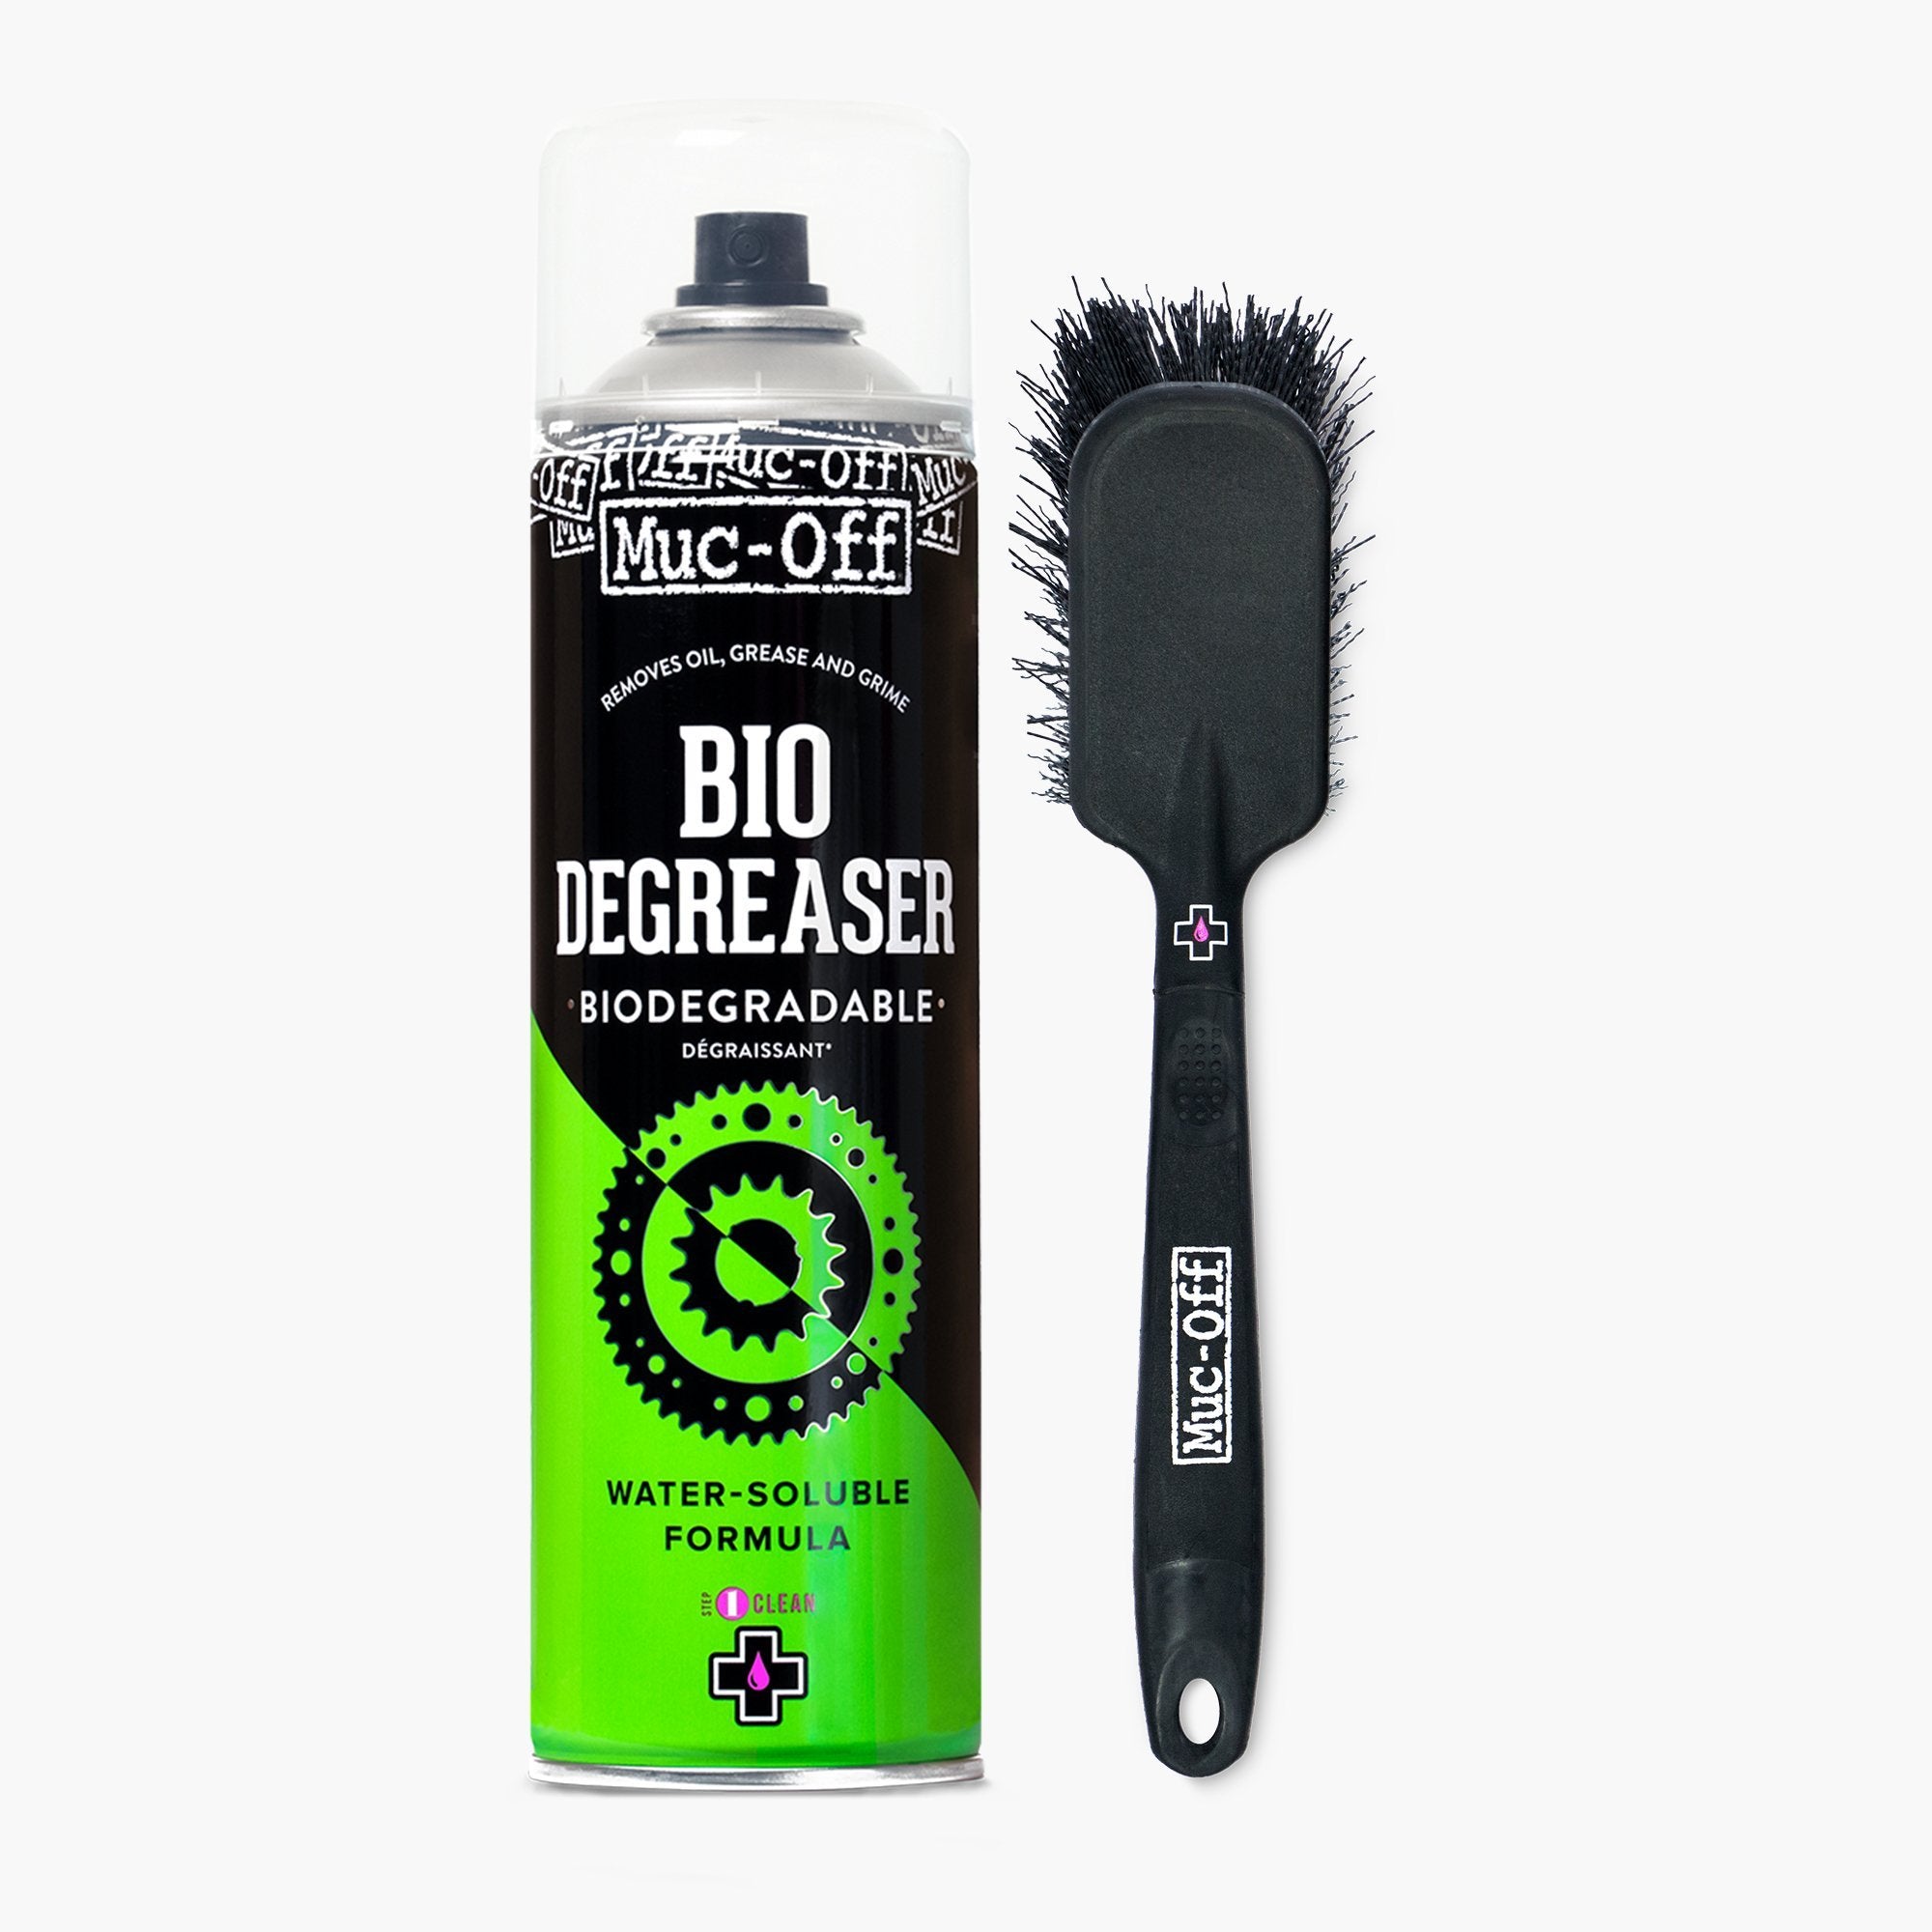 Bottle Cleaning Brush 500ml